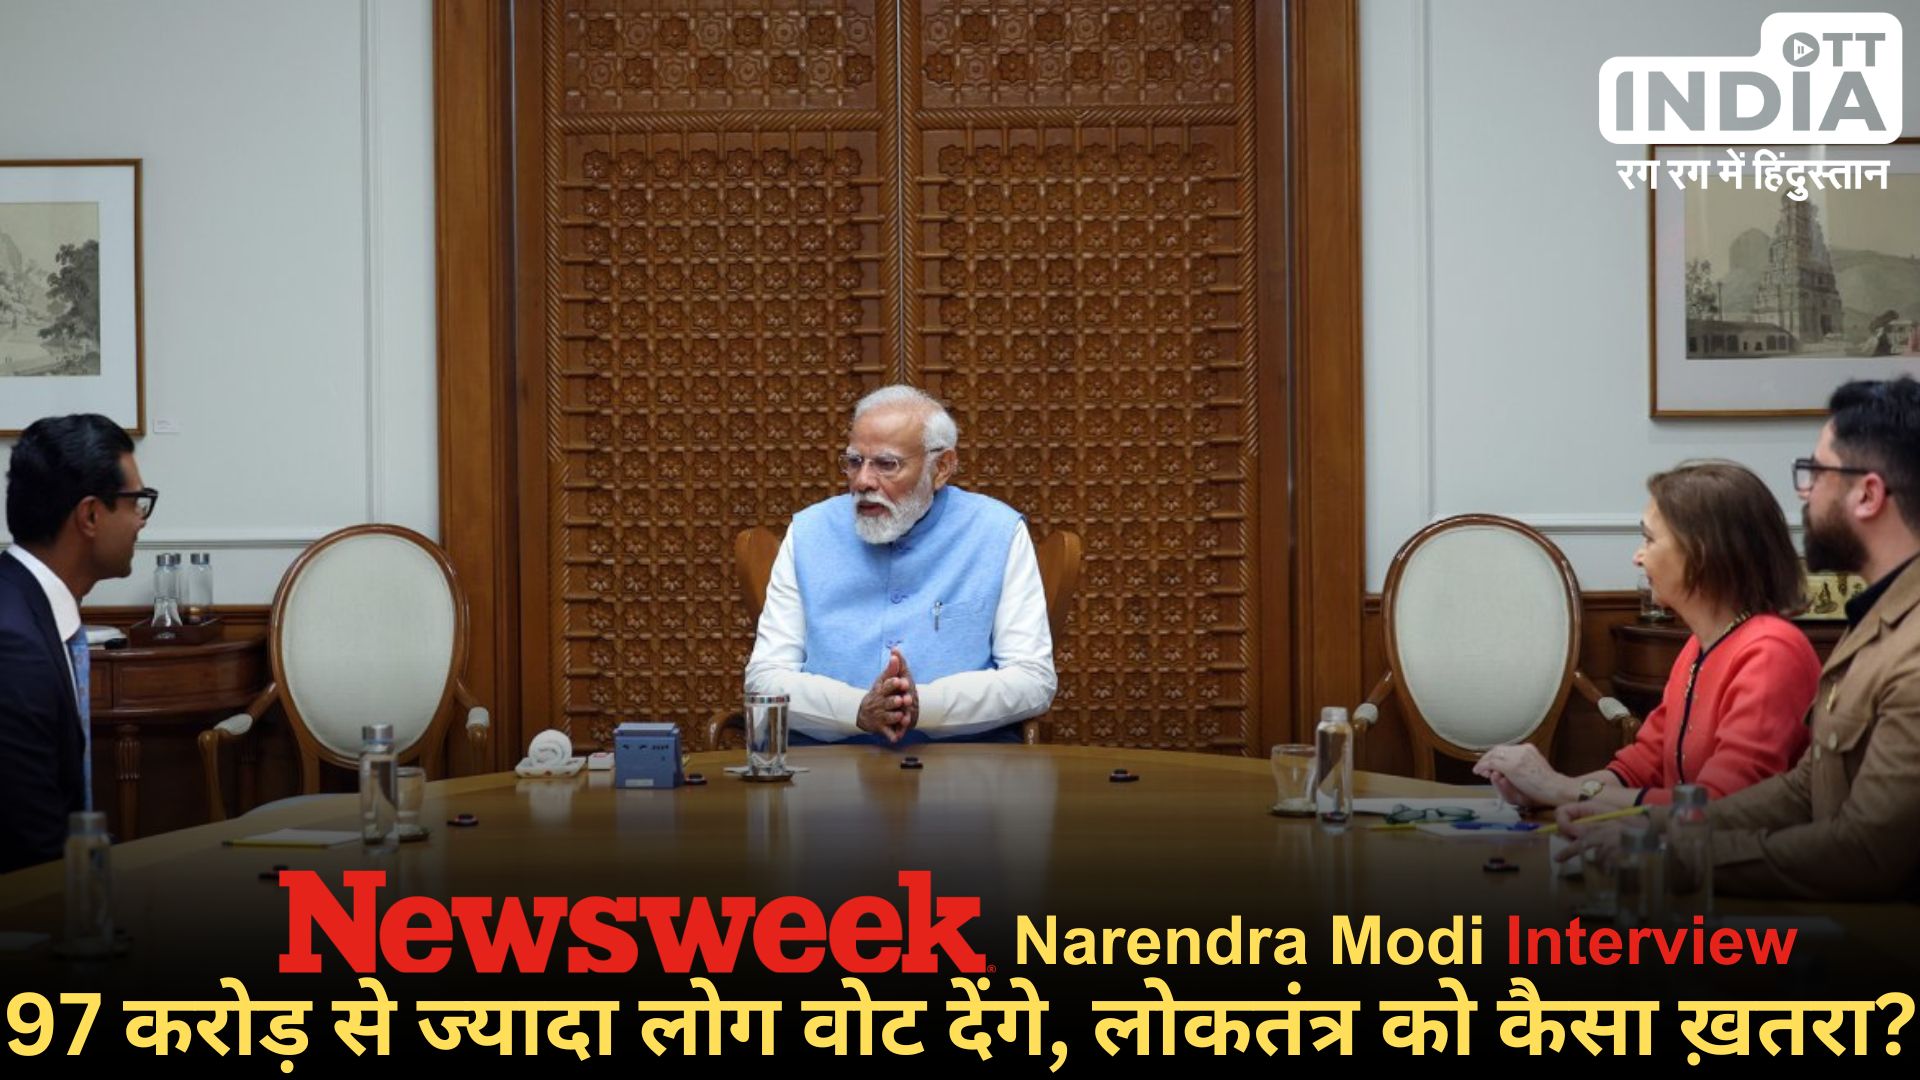 Narendra Modi Newsweek Interview: अमेरिकी मैगज़ीन को इंटरव्यू देते हुए चीन के मुद्दे पर बोले मोदी, राम मंदिर पर कही ये बात…